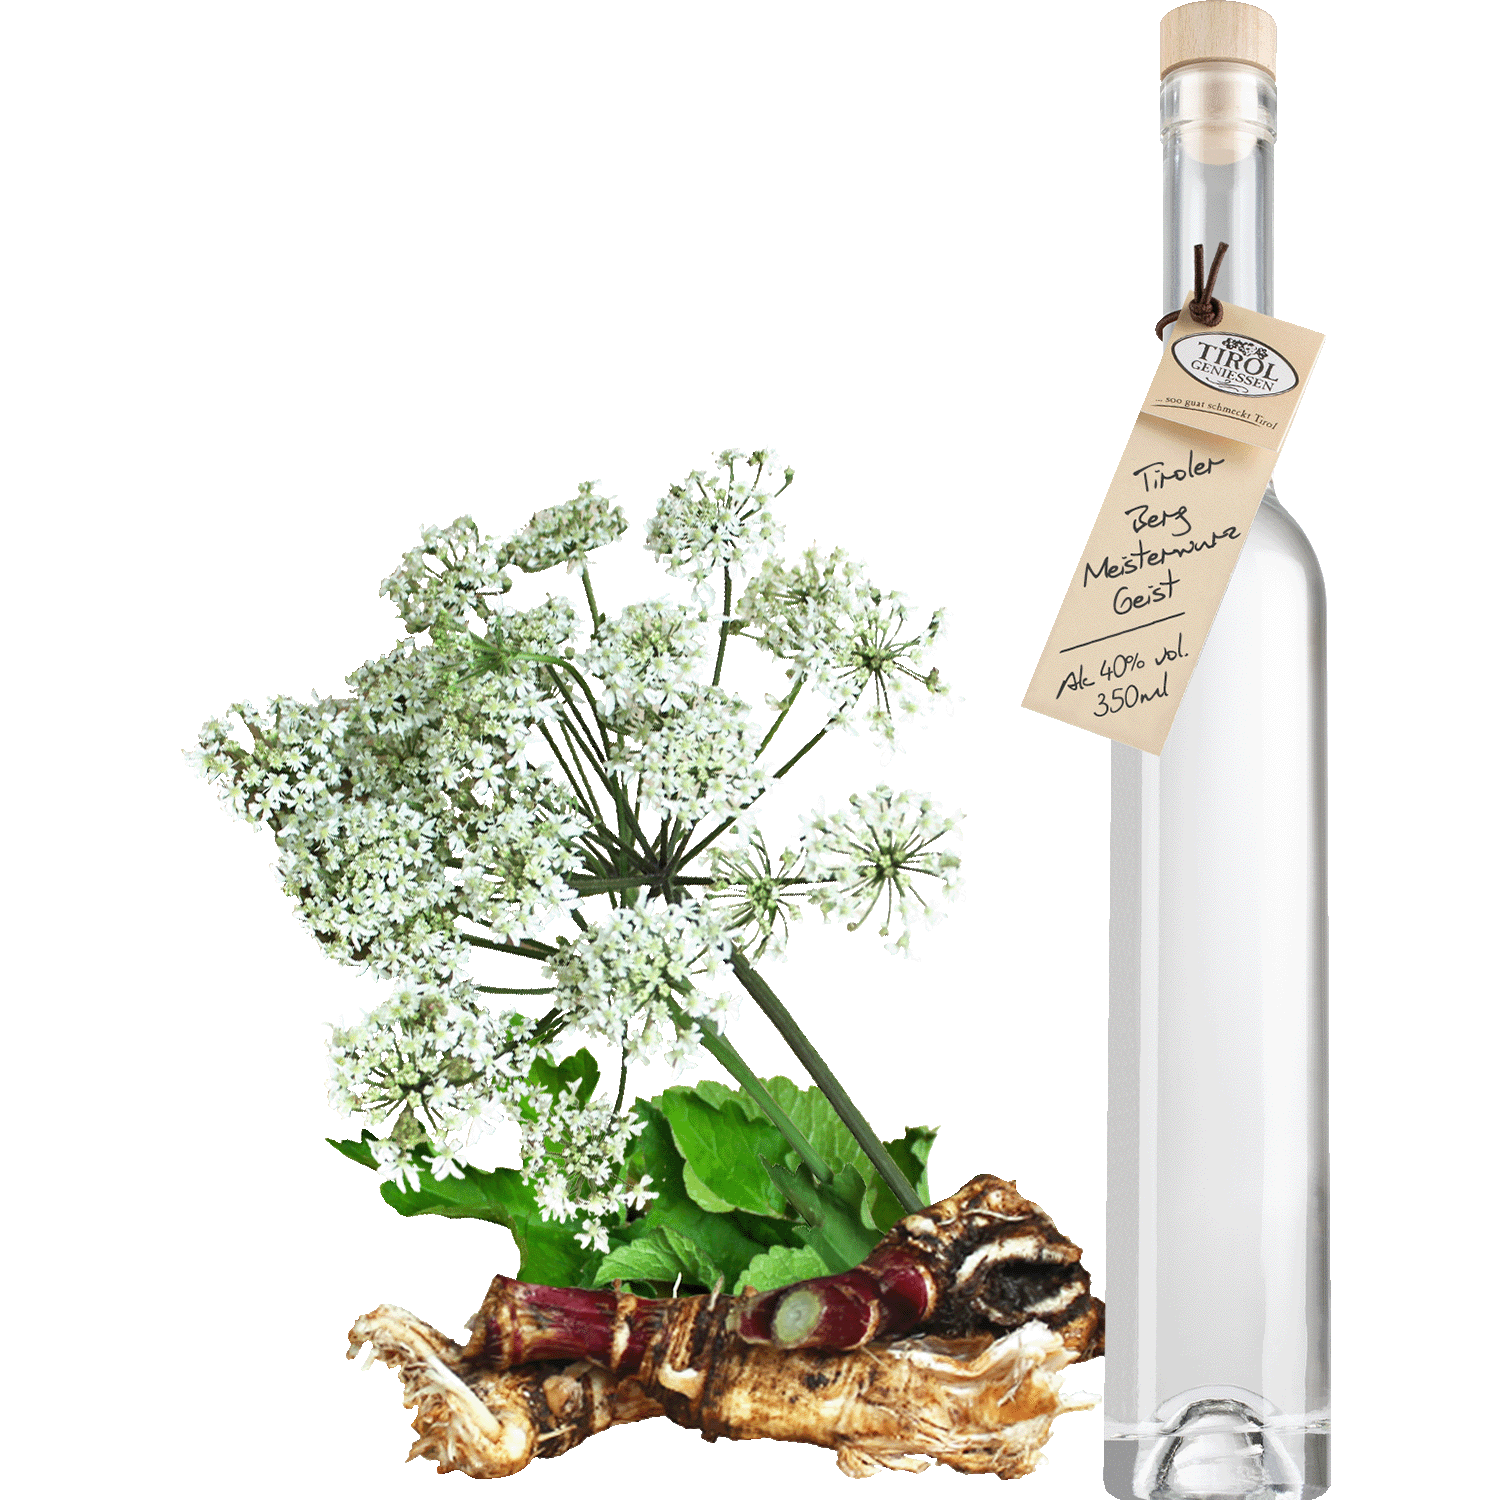 Masterwort Spirit in gift bottle from Austria from Tirol Geniessen